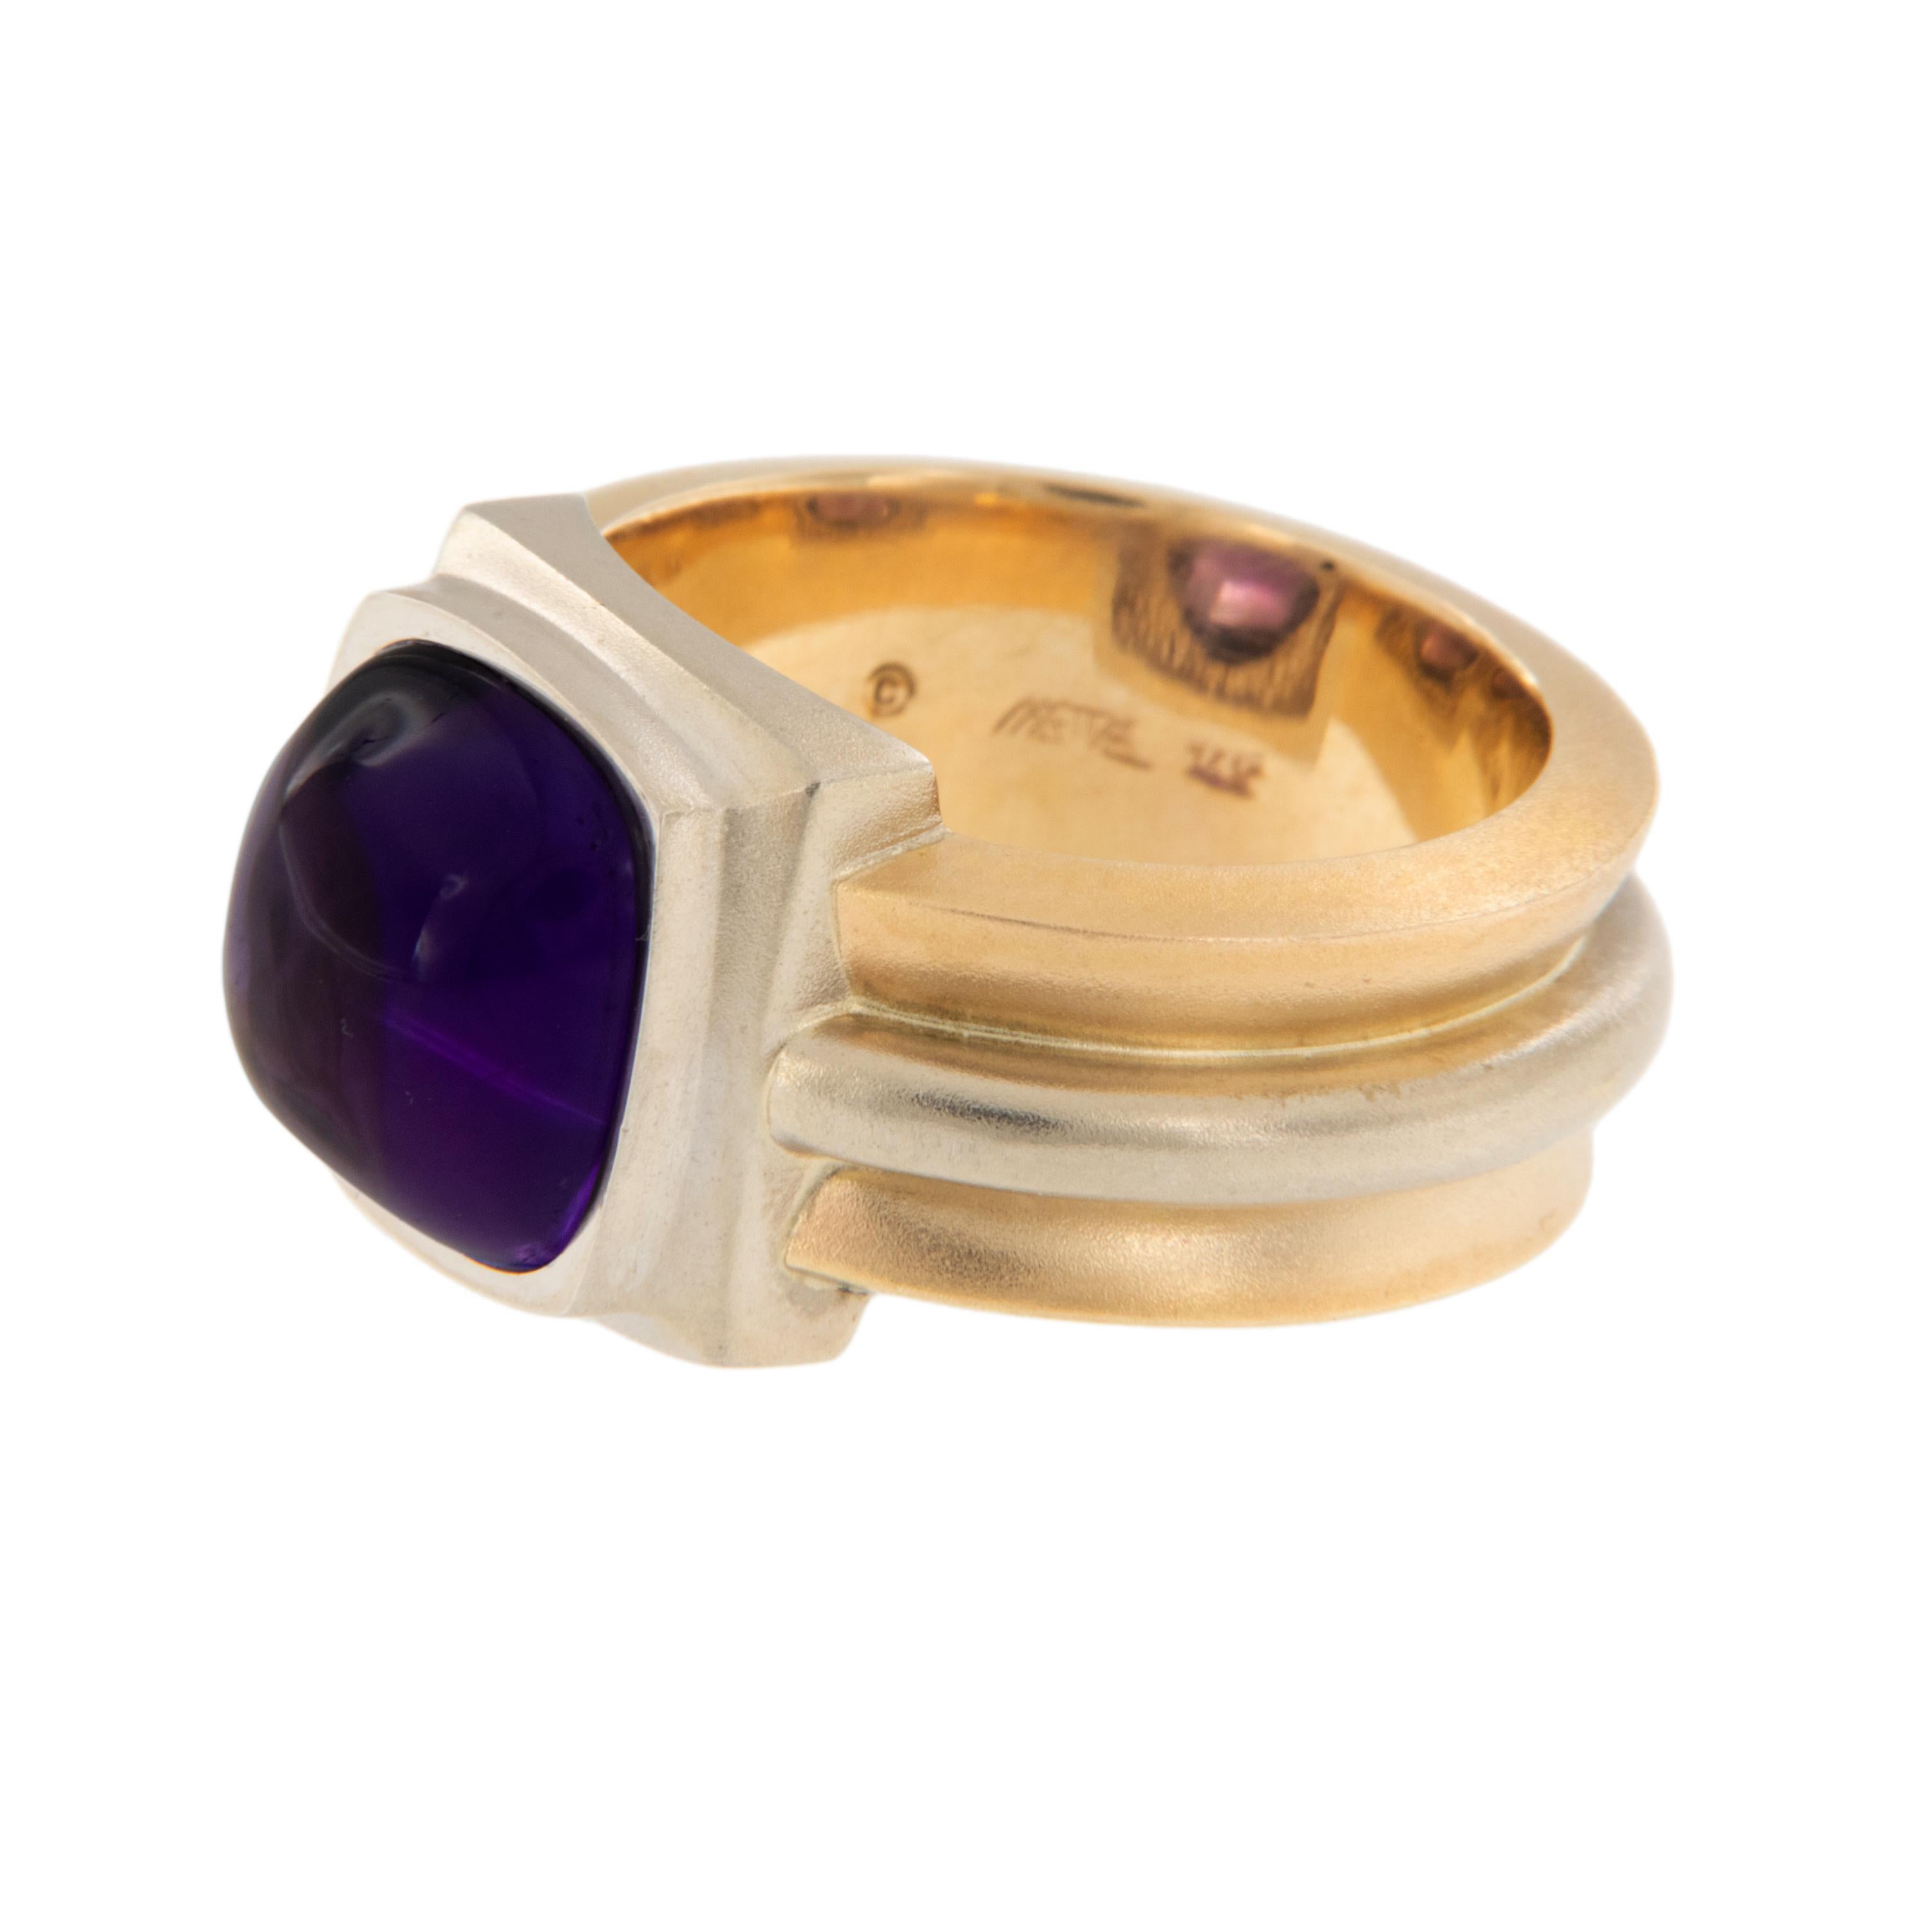 Patrick Irla ist bekannt für seine wunderschönen zeitgenössischen Schmuckstücke. Dieser Ring aus 14-karätigem Gelb- und Weißgold wurde von Hand zusammengesetzt und enthält einen 10 mm großen Zuckerhut-Amethysten mit edler Farbe! Der Ring wurde in